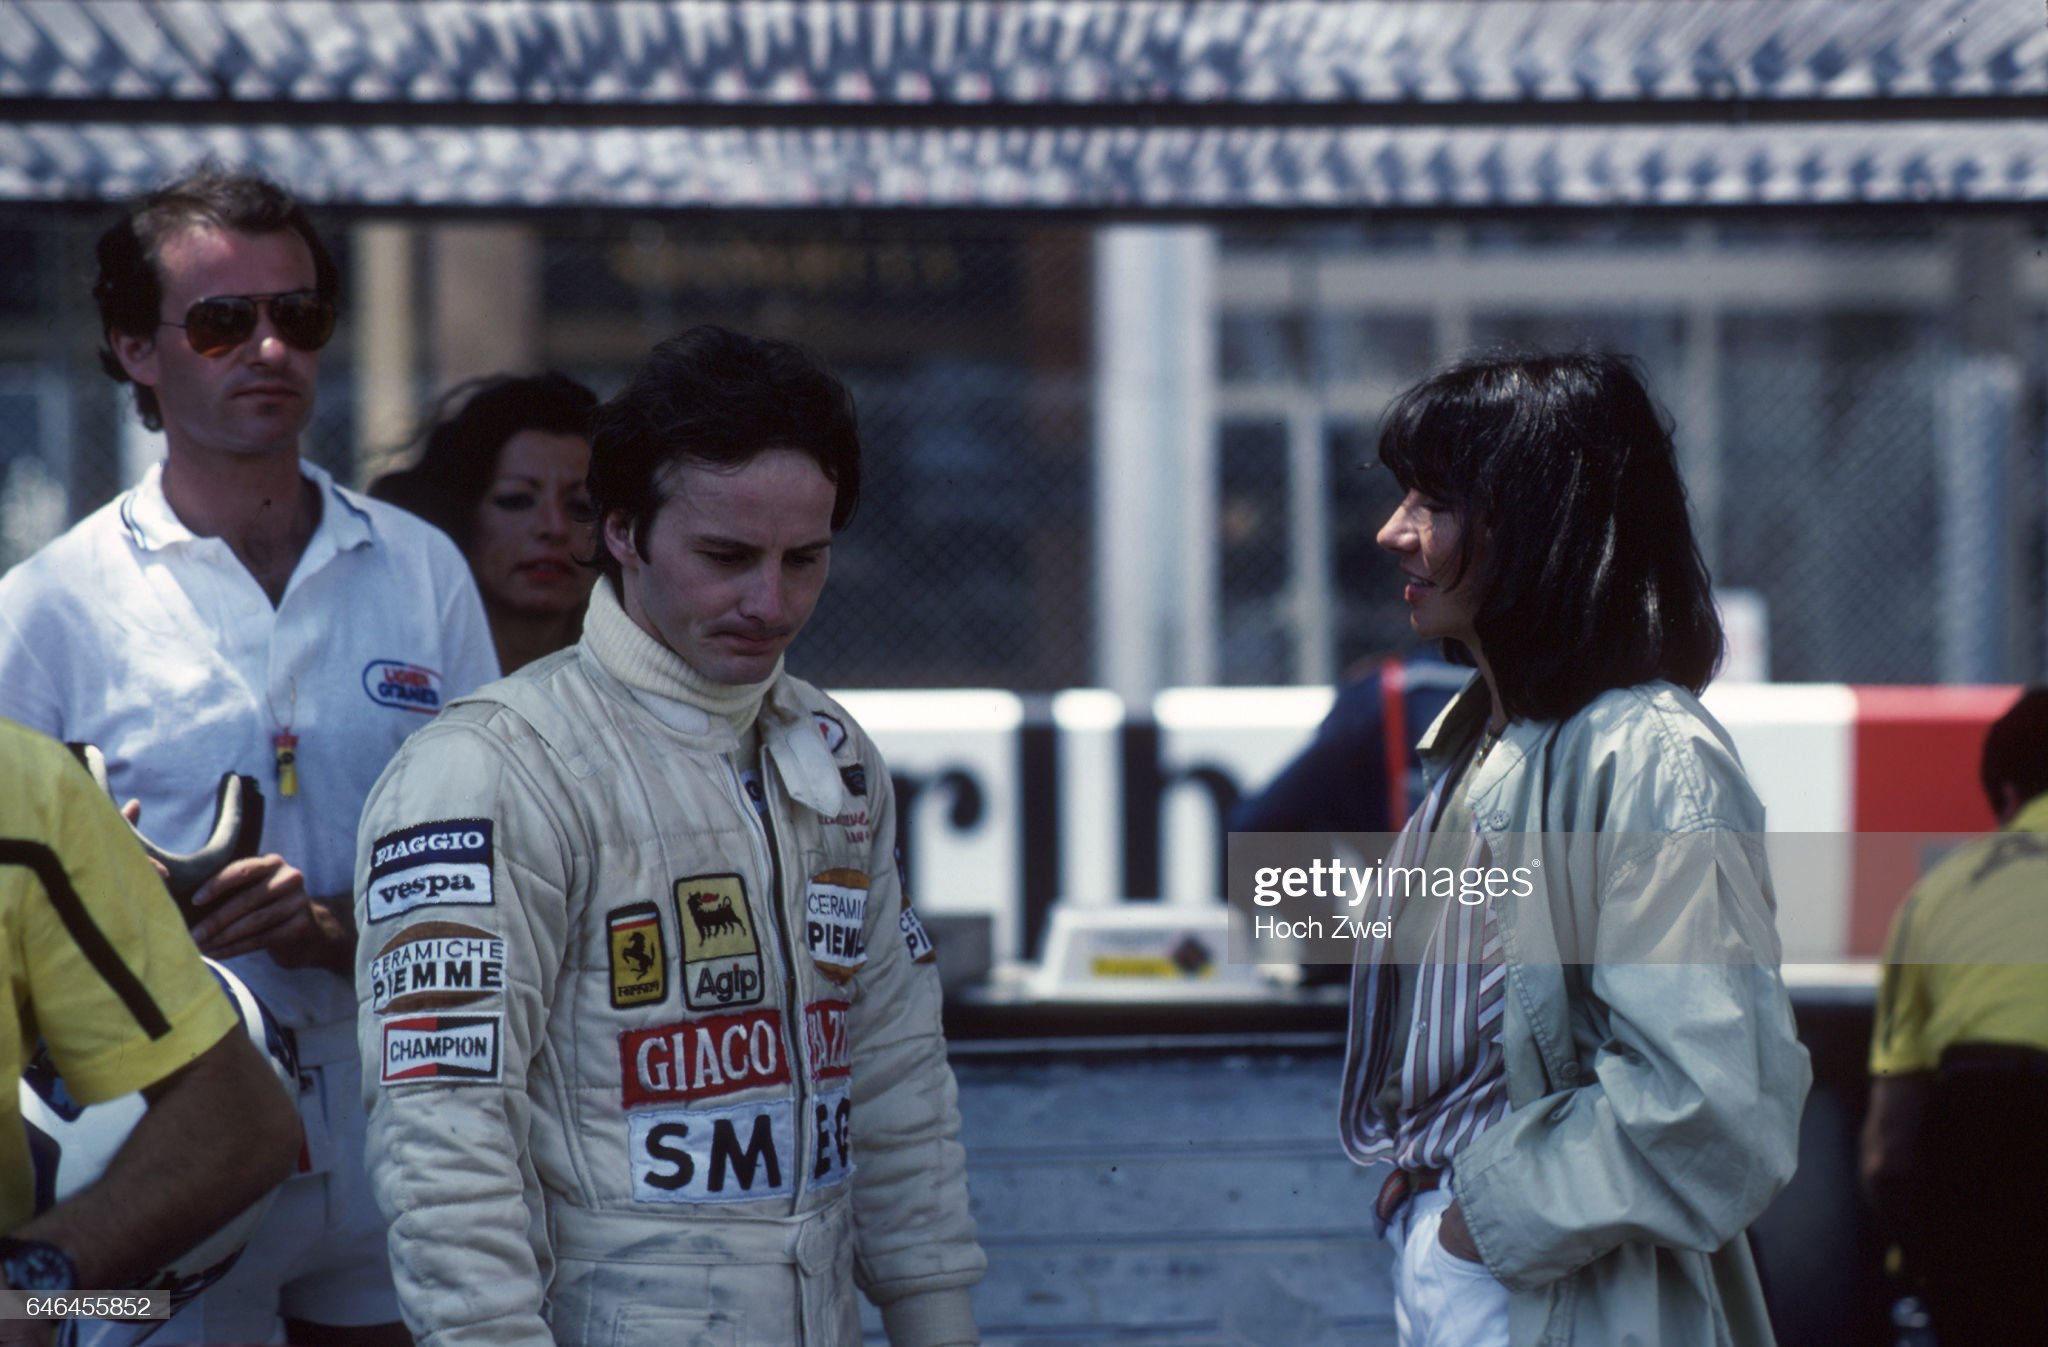 Monaco Grand Prix, Monte Carlo, 31.05.1981. Gilles and Joanne Villeneuve. 